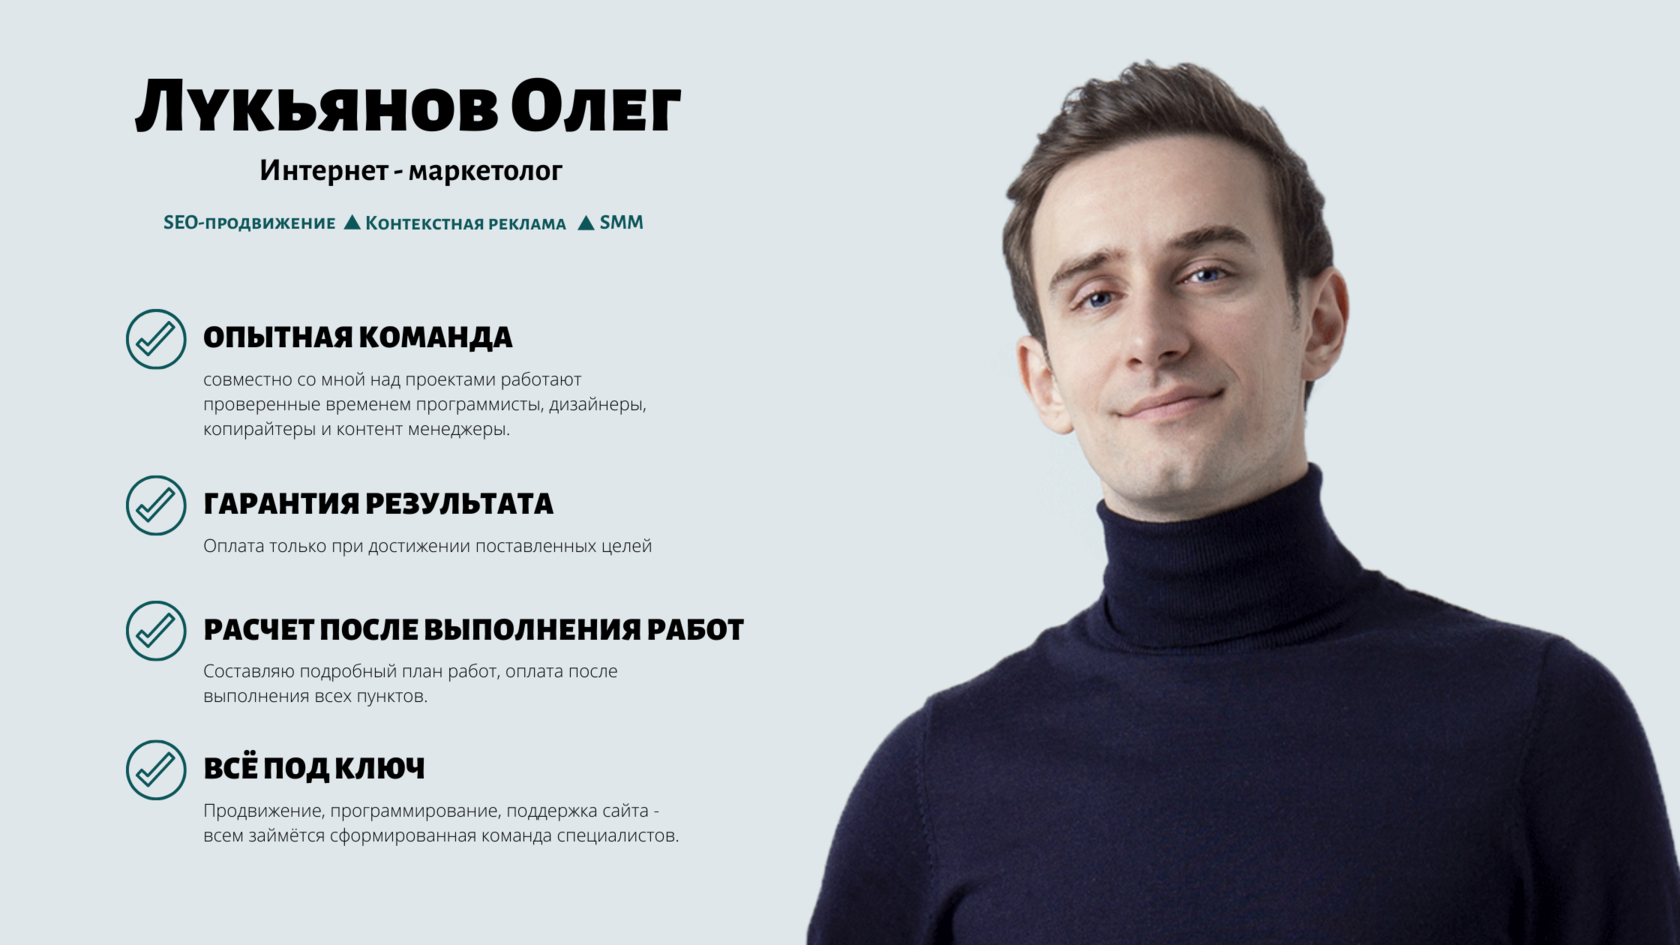 Создание продвижение сайтов петербург с гарантией результата создание веб дизайна для сайта онлайн